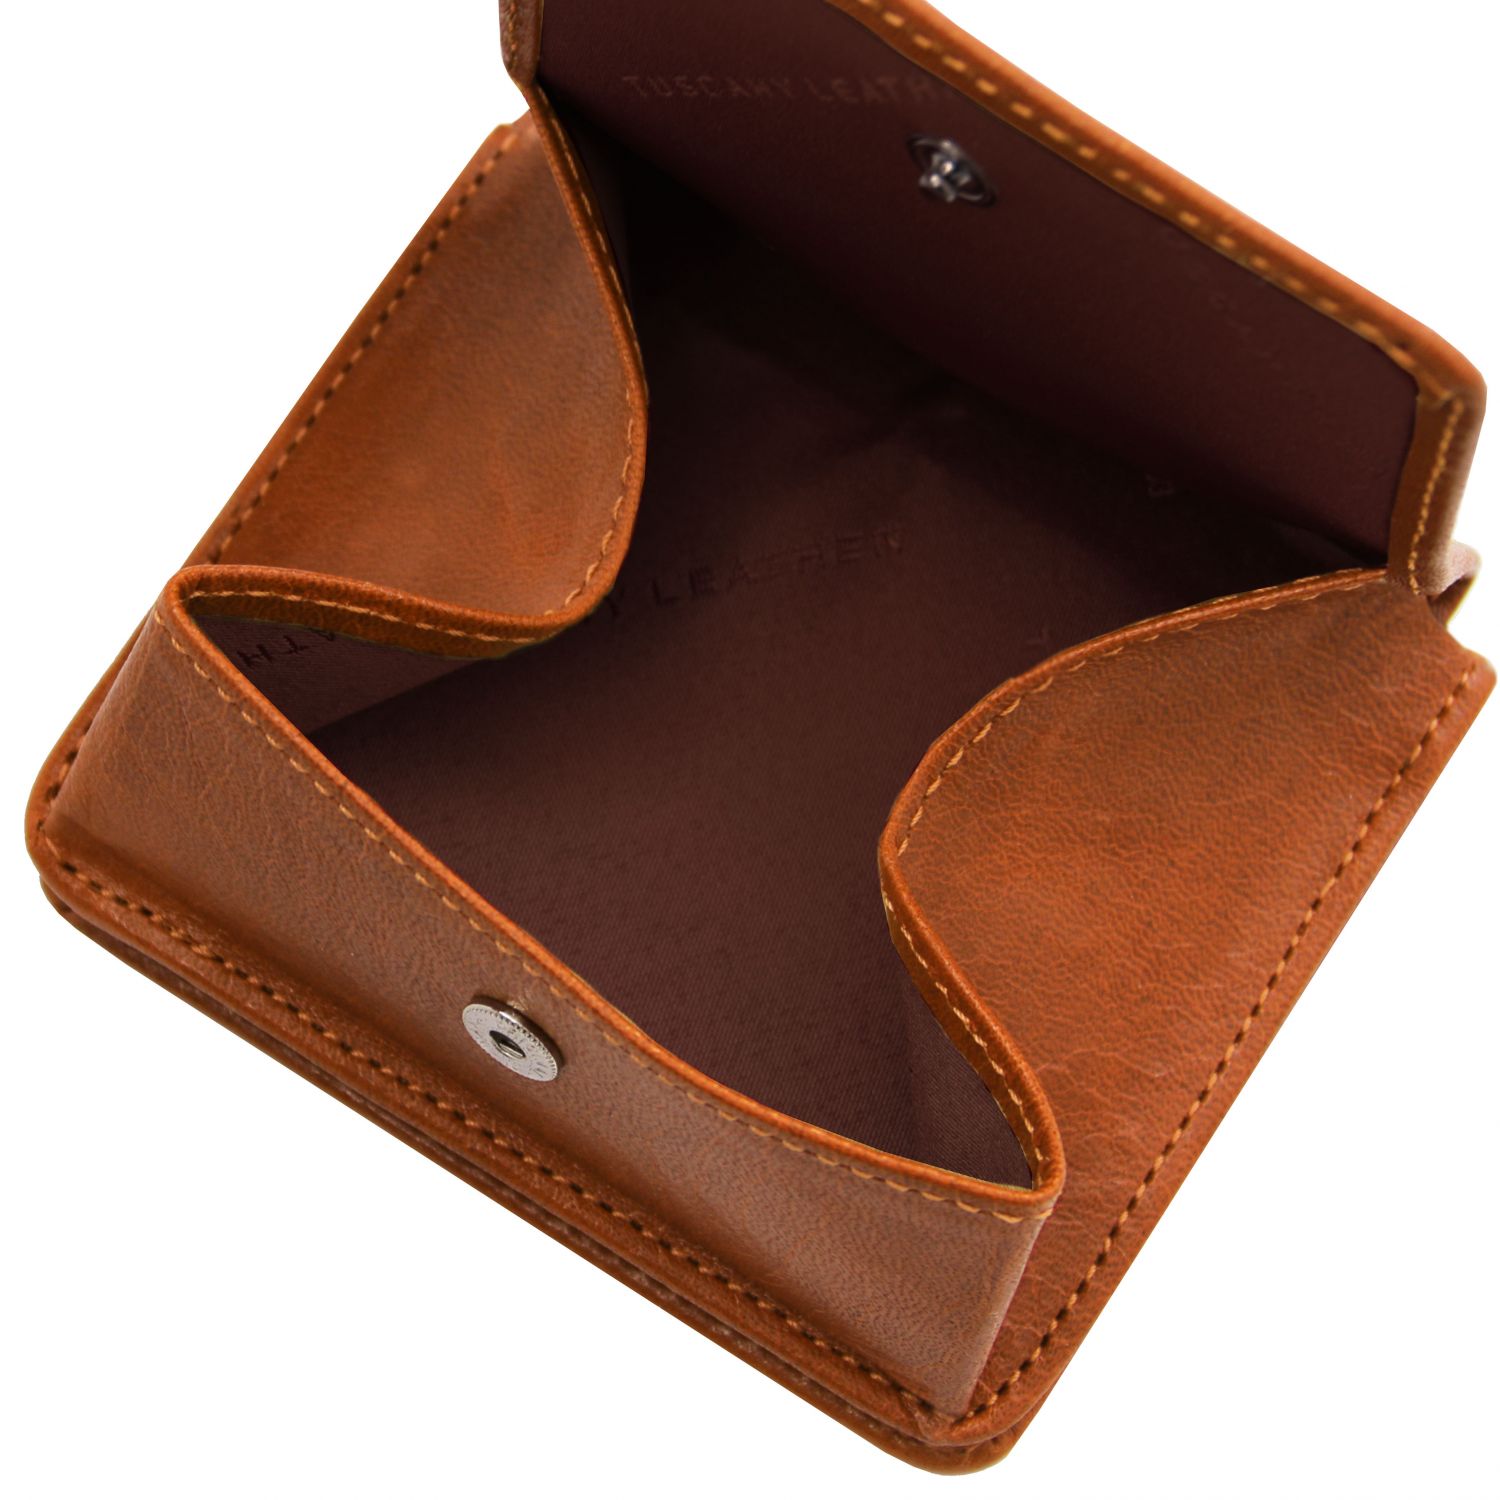 Elégant portefeuille en cuir avec porte monnaie - Miel (TL142059)